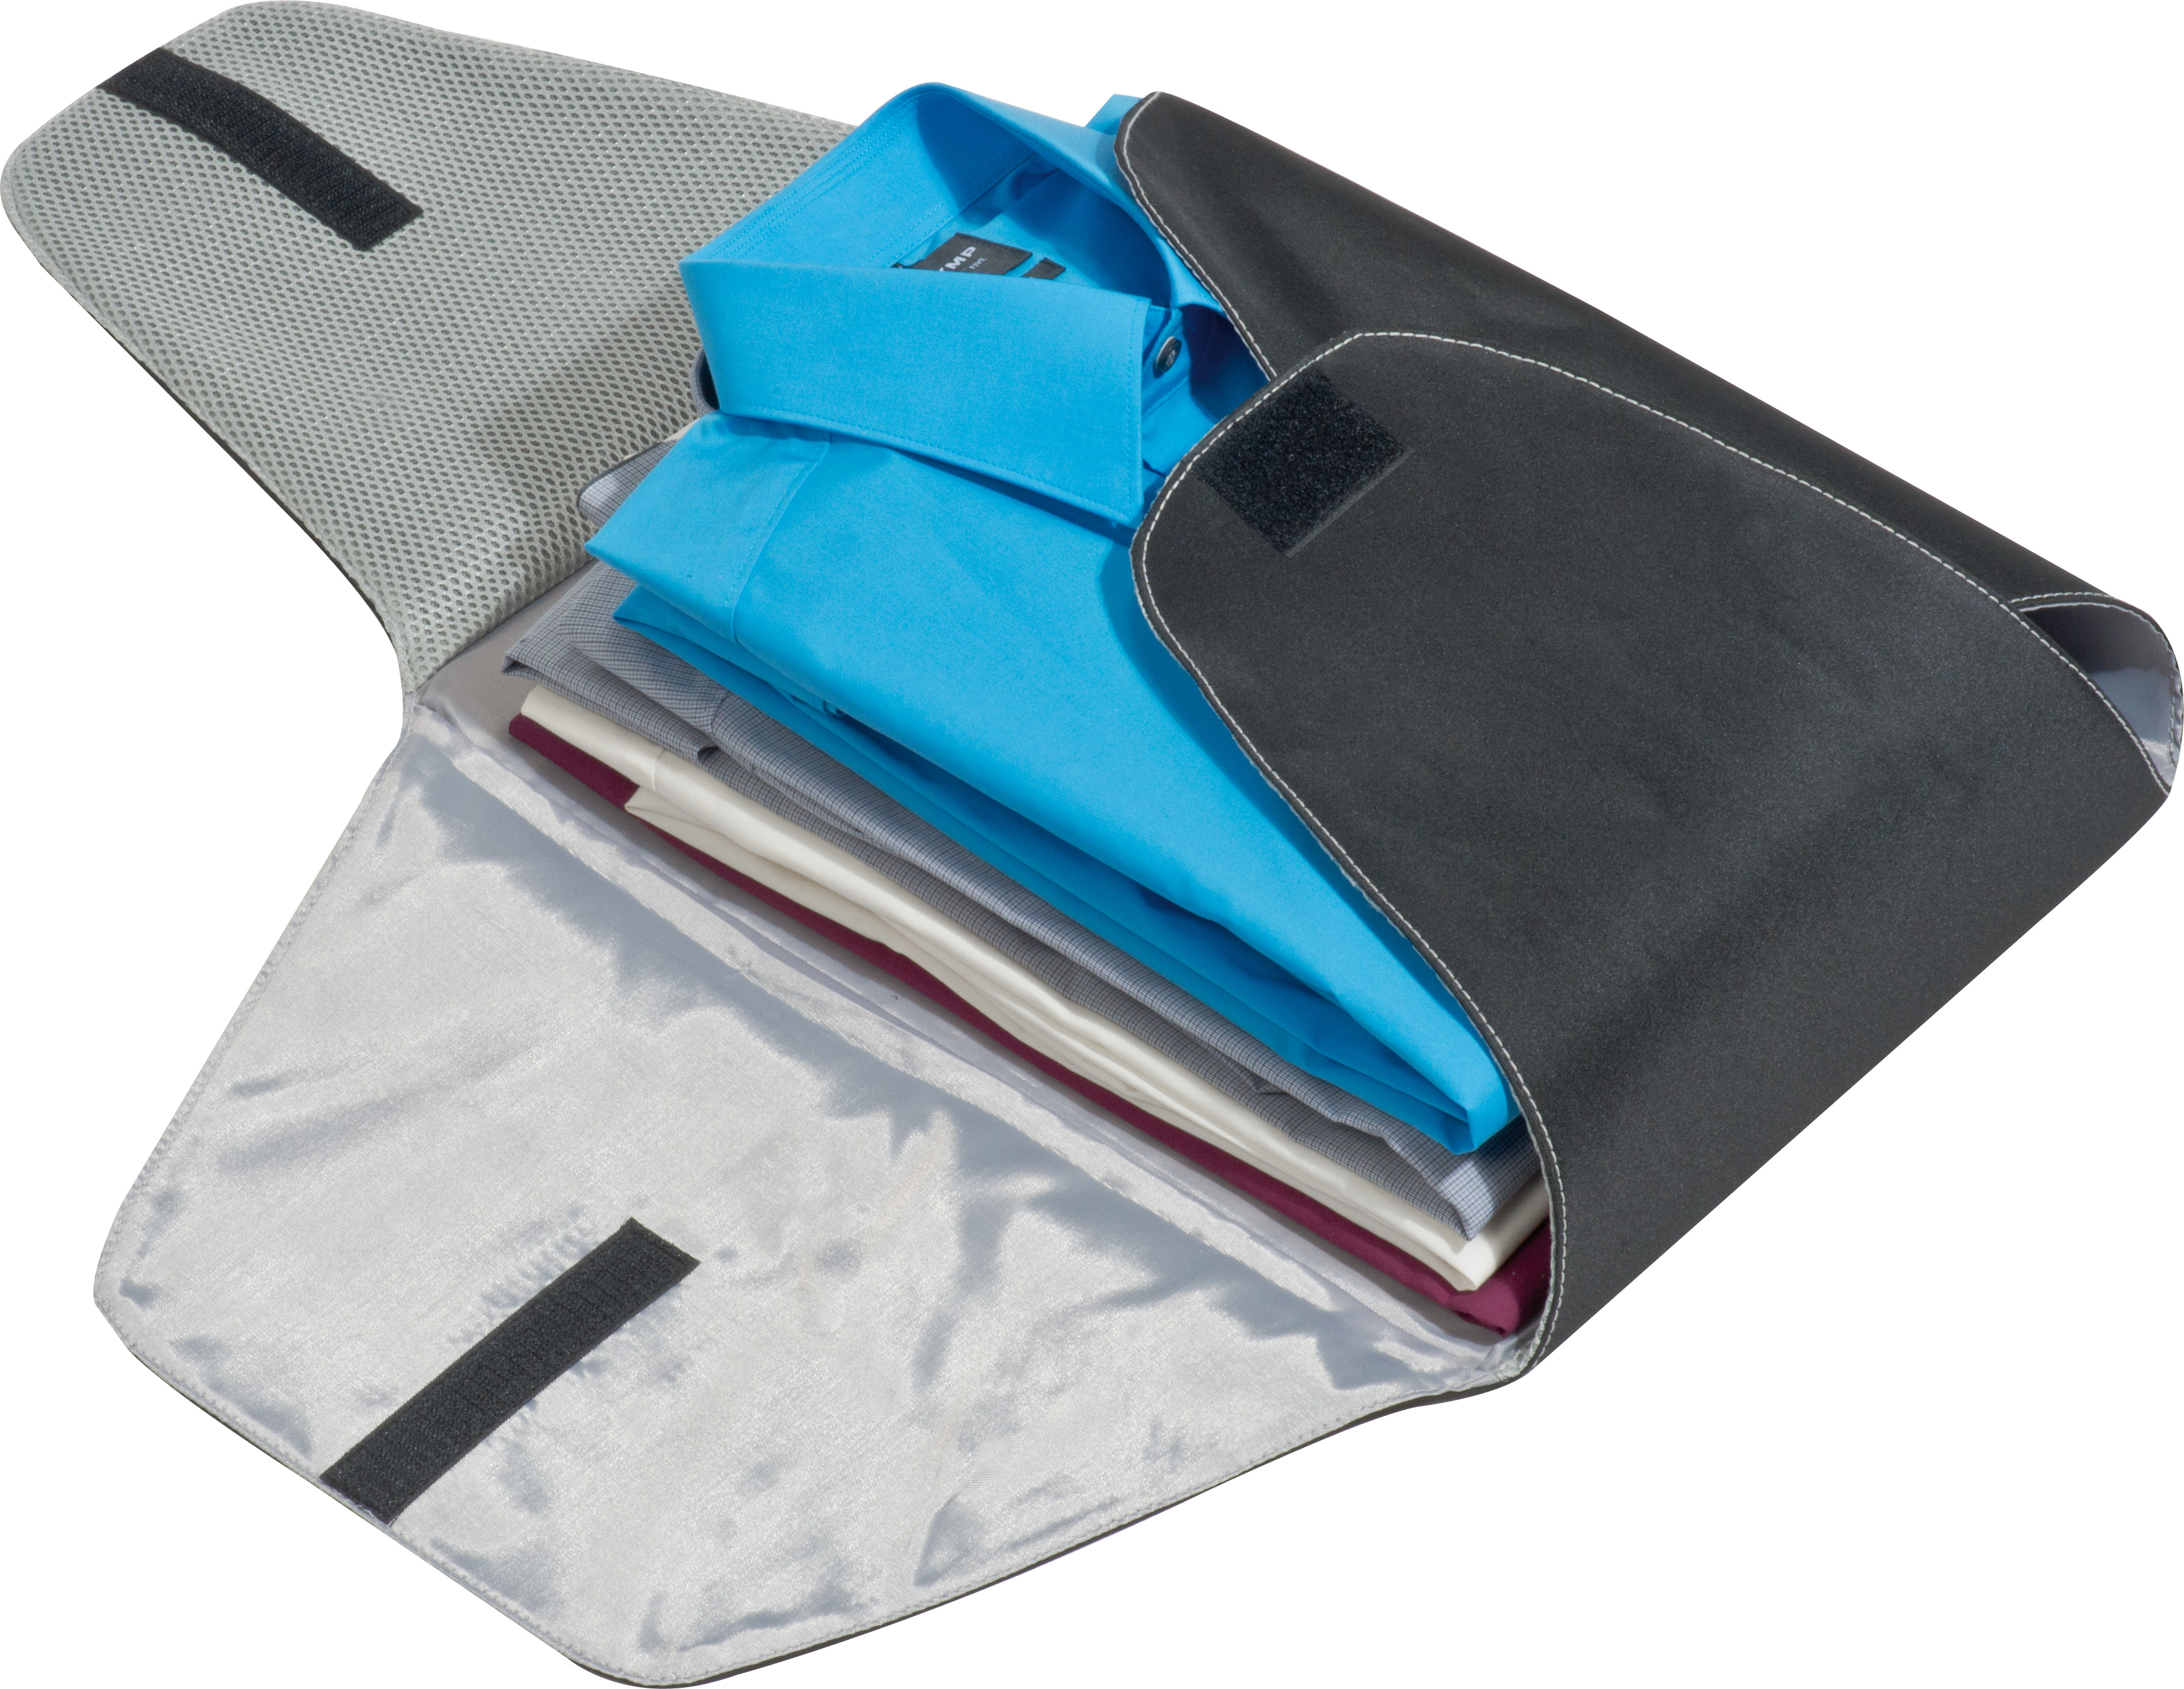 Previene rughe camicia borsa portaoggetti da viaggio pieghevole anti piega camicie pantaloni abbigliamento imballaggio organizer portaoggetti Green 